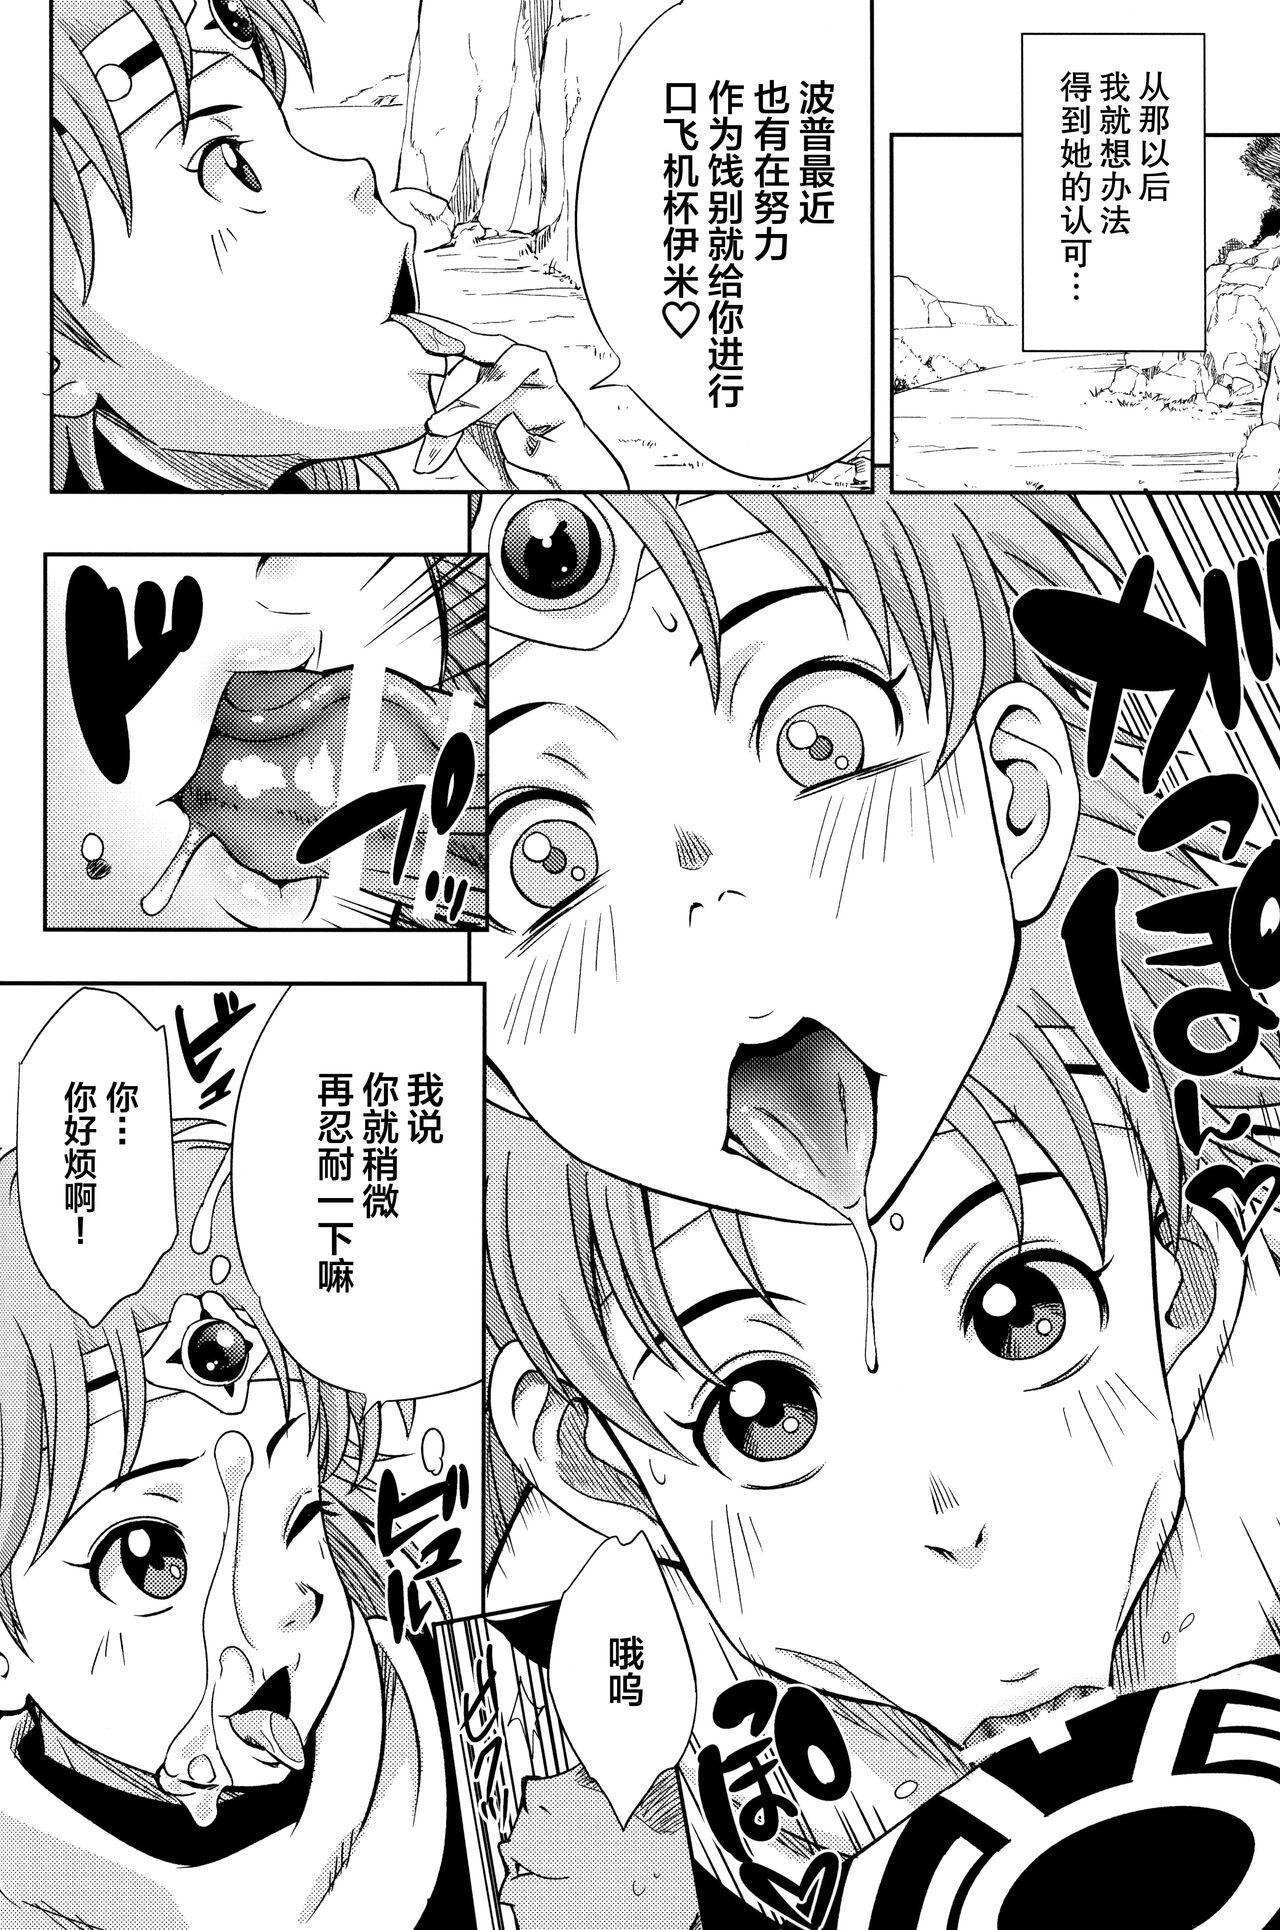 Str8 Pink no Bakajikara - Naruto Dragon quest dai no daibouken Machine - Page 7